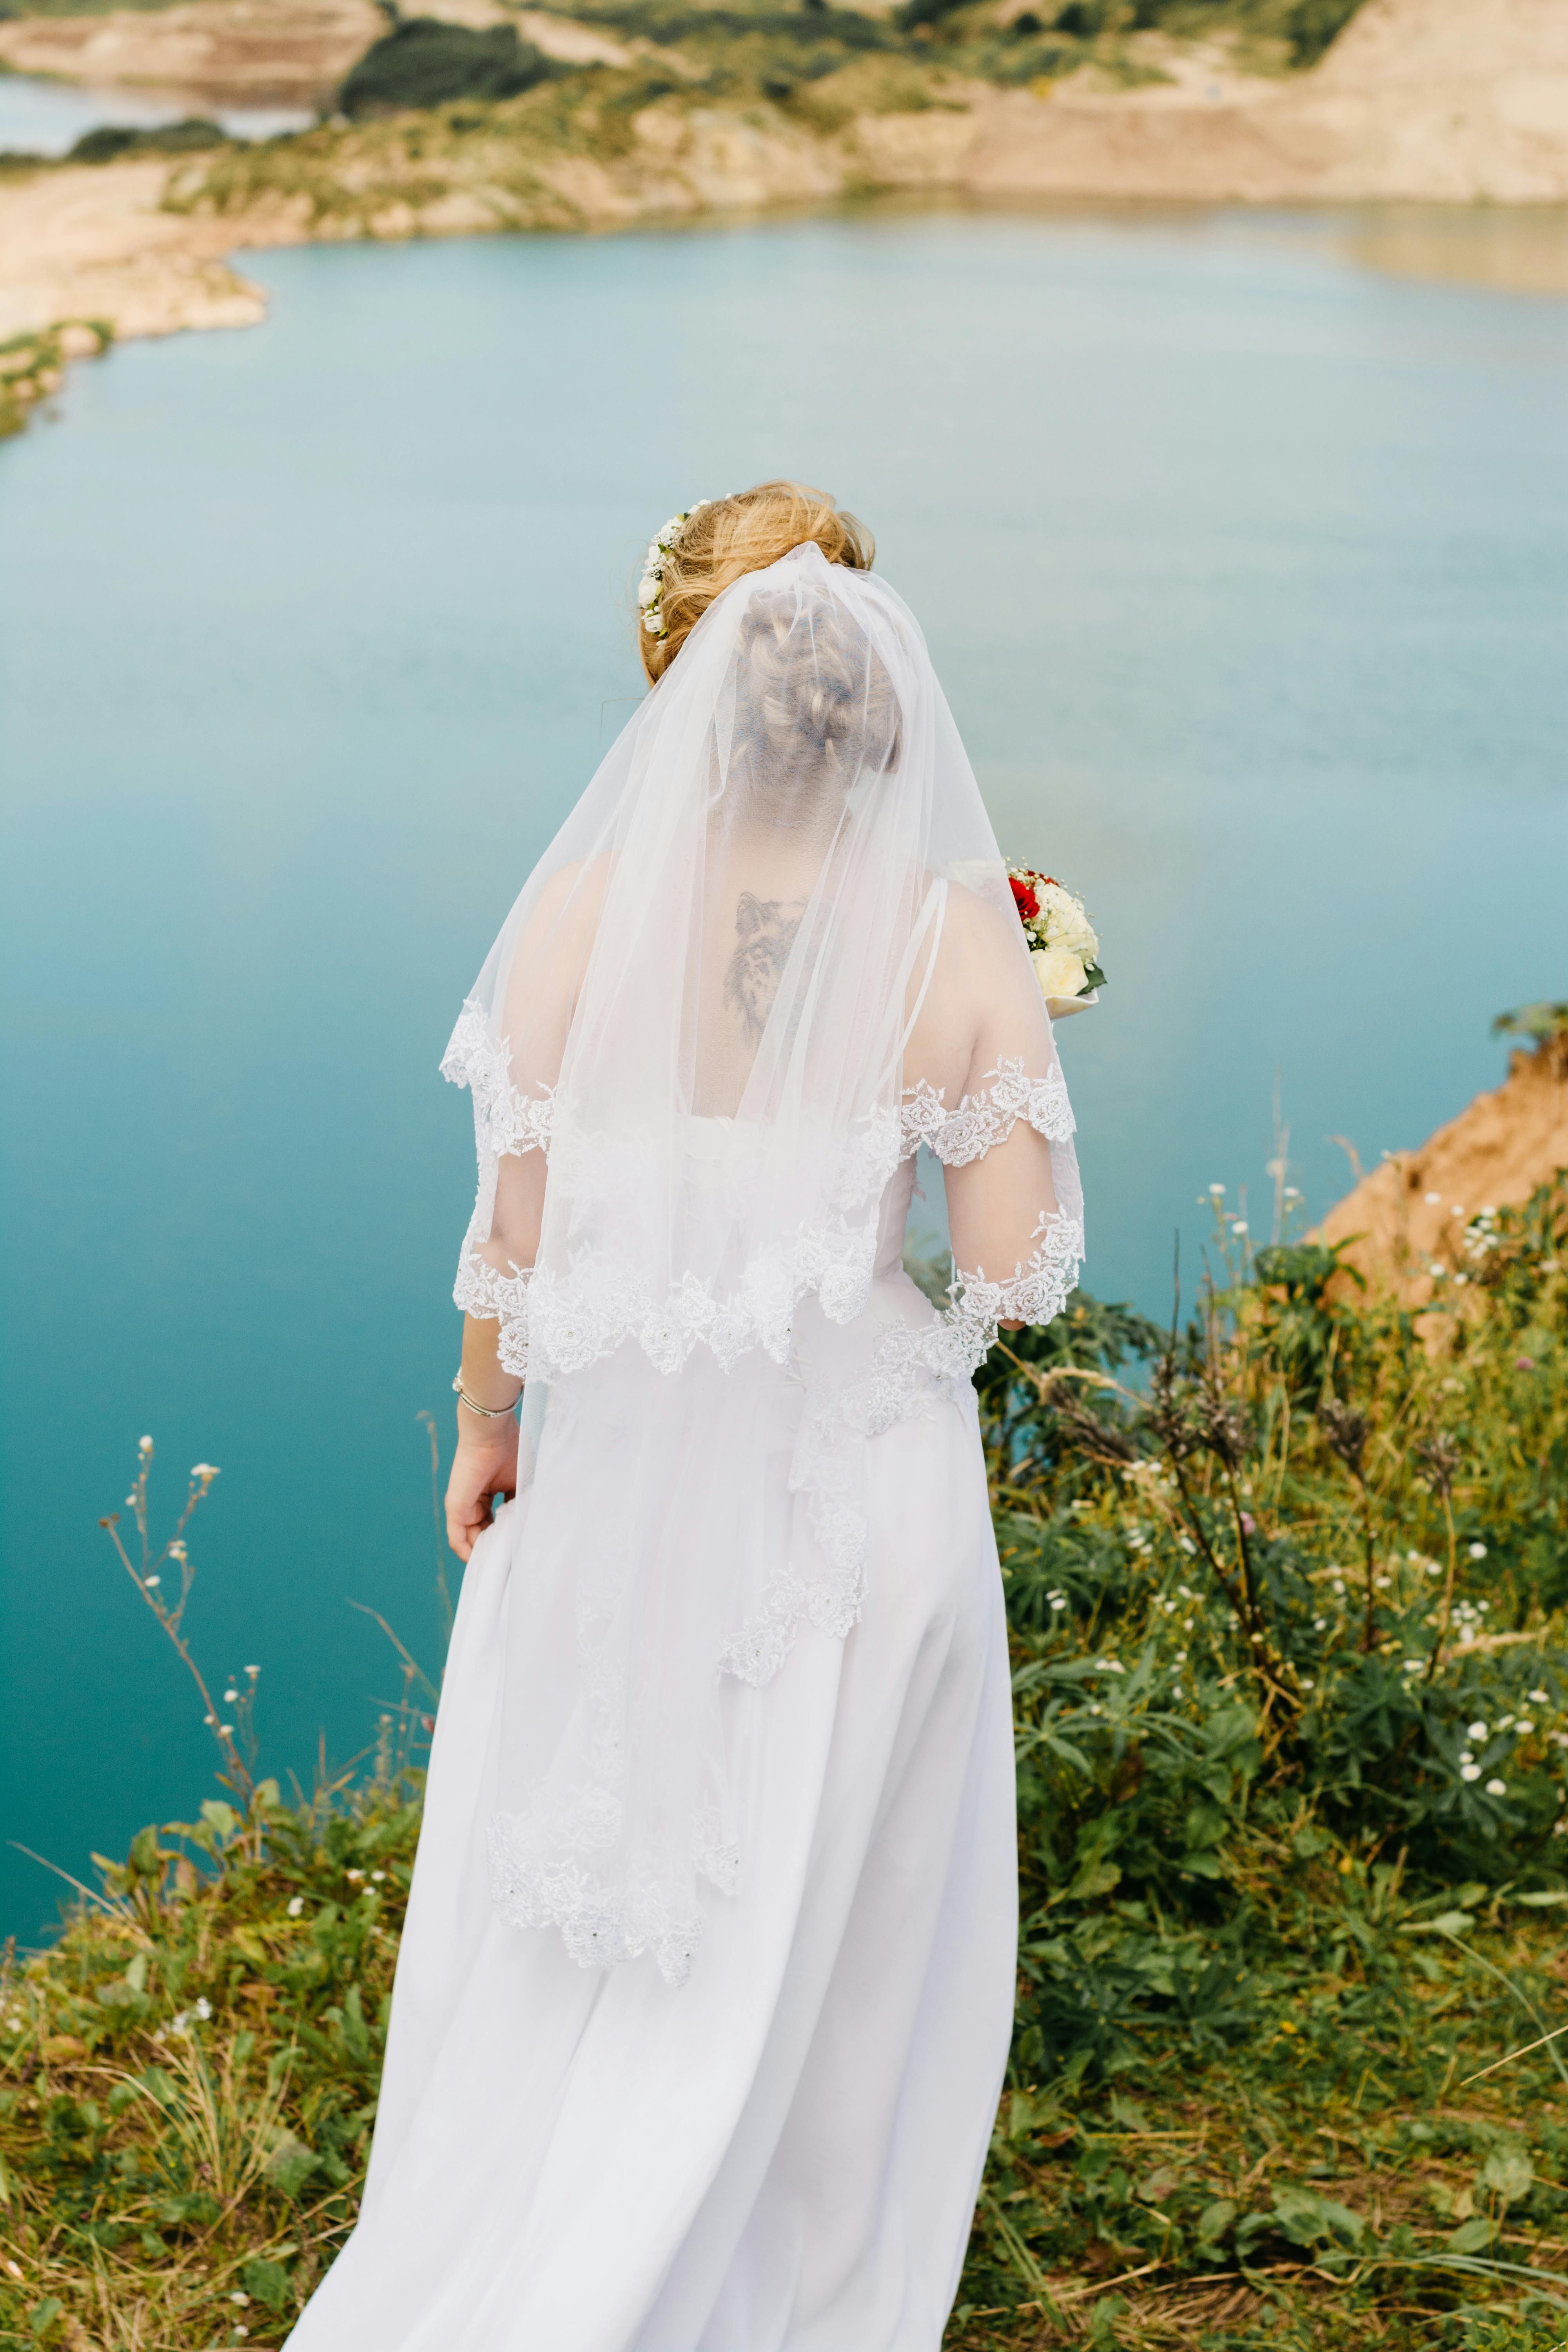 崖の近くに立っている白いレースのウェディングドレスを着ている女性 無料の写真素材